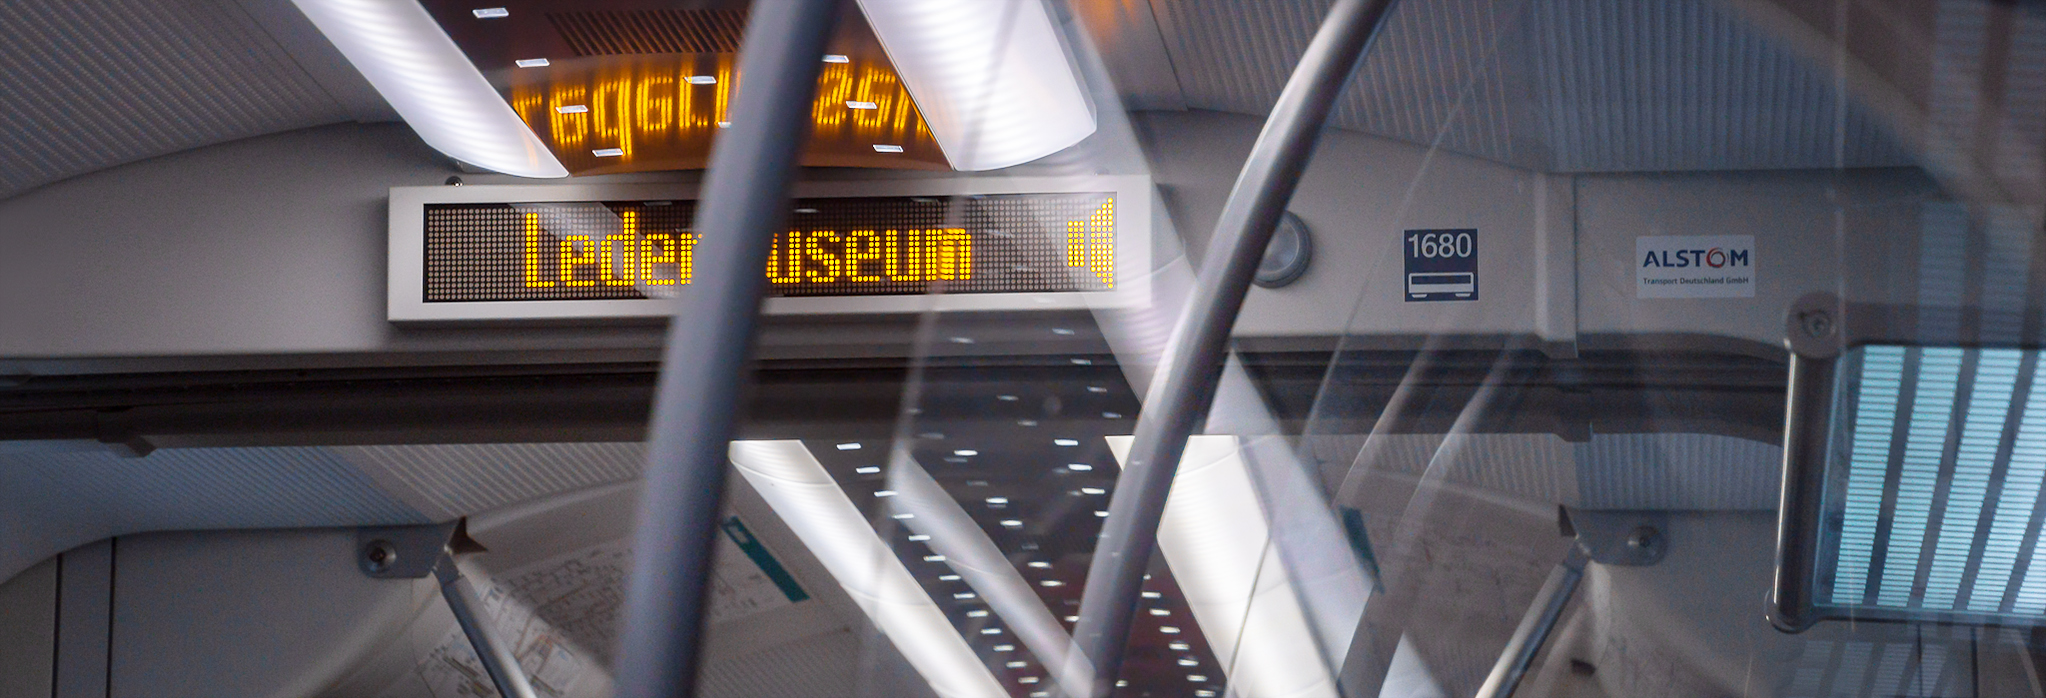 Ledermuseum - Nächster-Halt-Anzeige in der S-Bahn